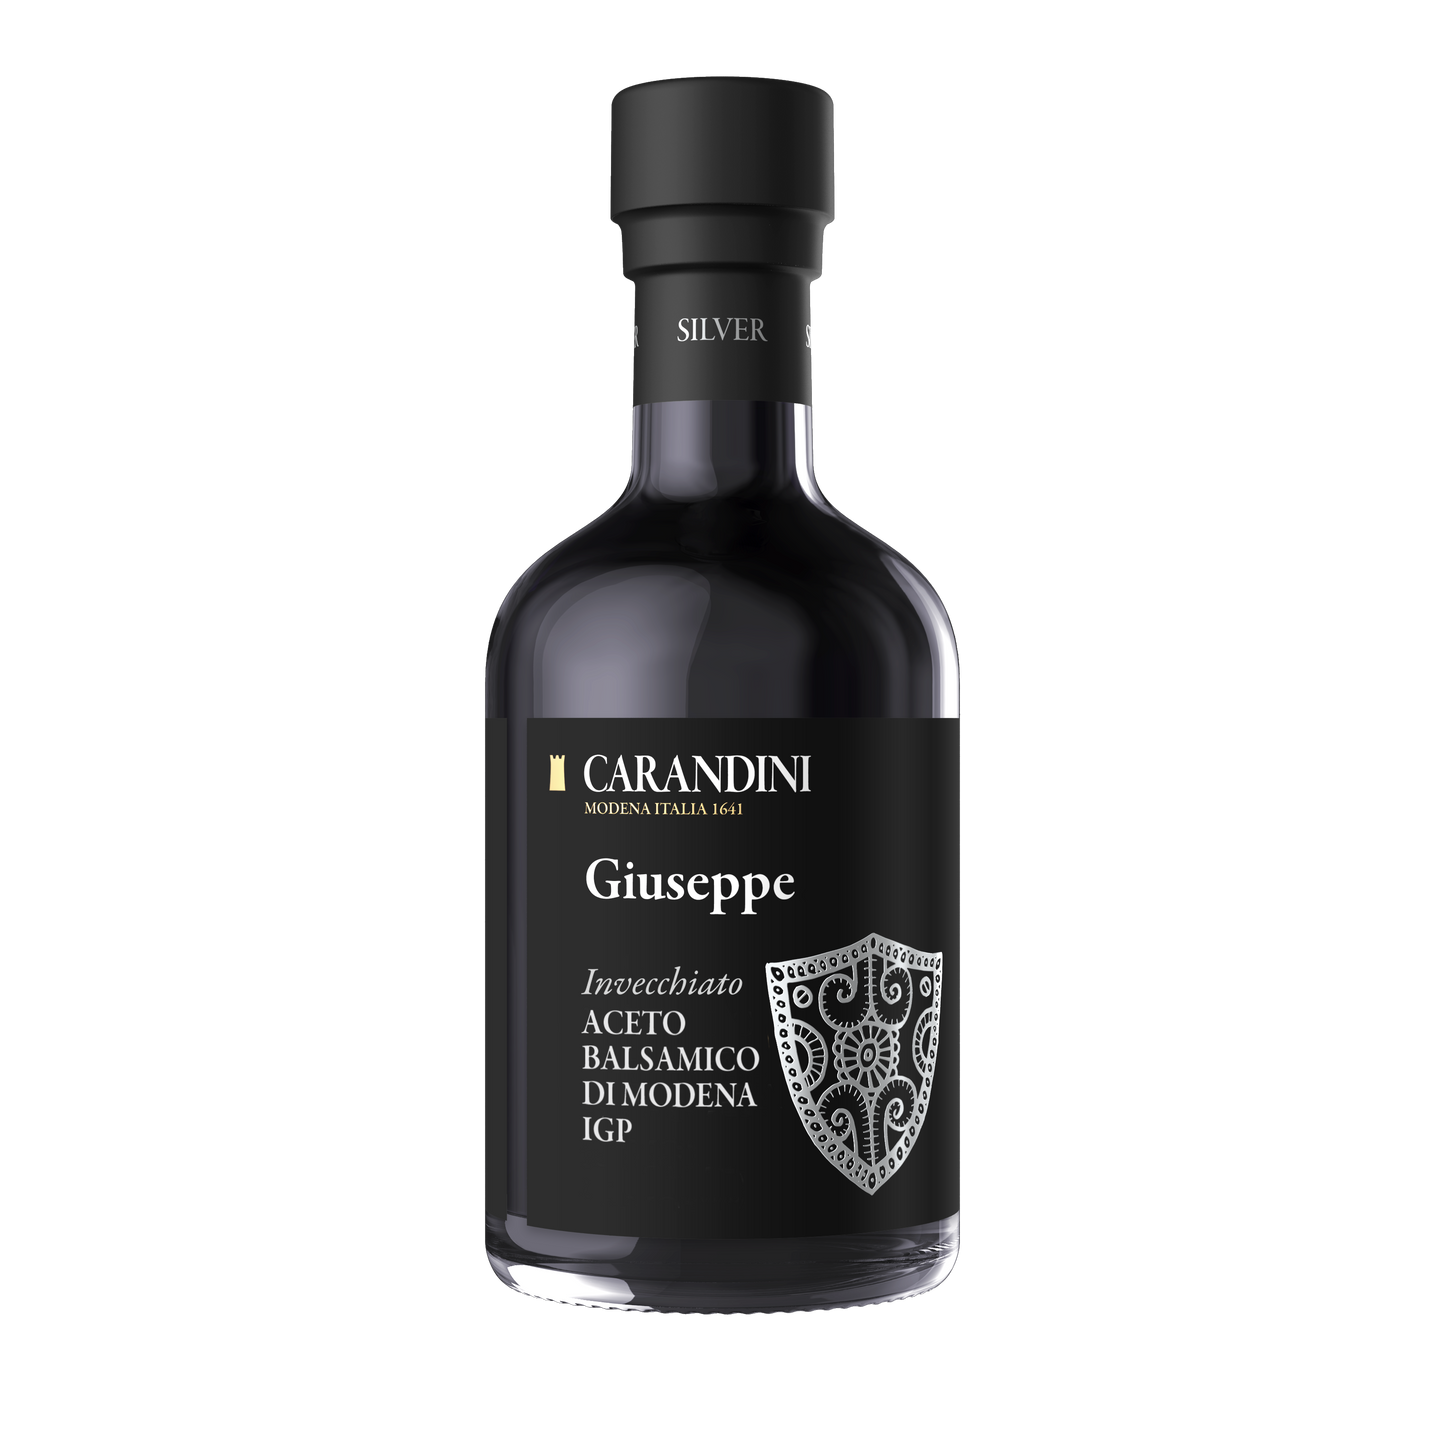 Giuseppe Aged Balsamic Vinegar of Modena PGI